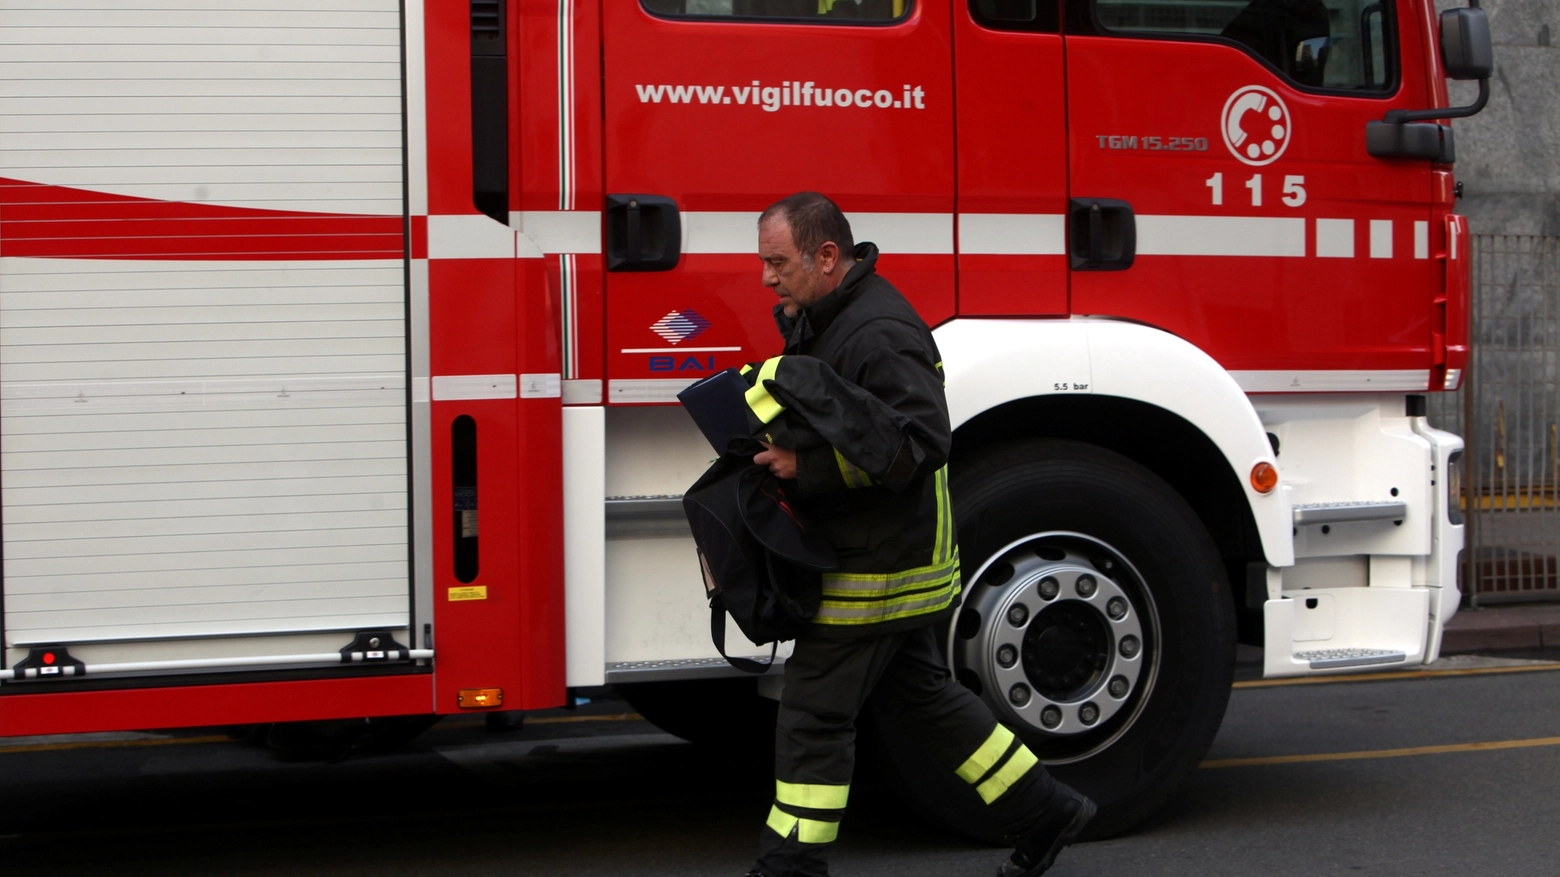 Maltempo ad Ascoli, crollo in centro: sul posto i vigili del fuoco (Imagoeconomica)